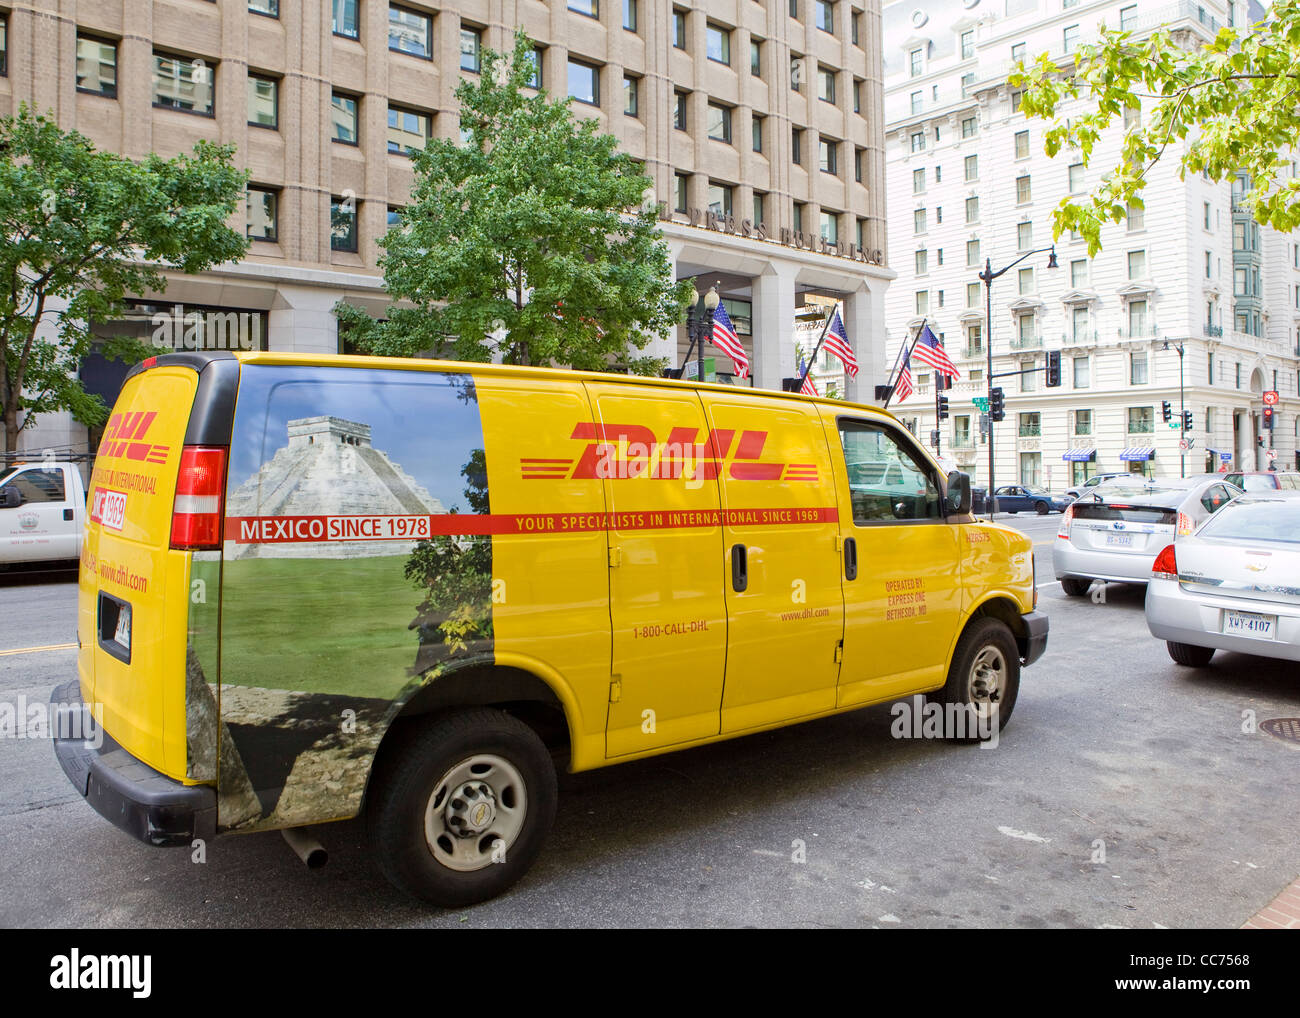 Livraison DHL van stationné sur une rue de ville - USA Banque D'Images